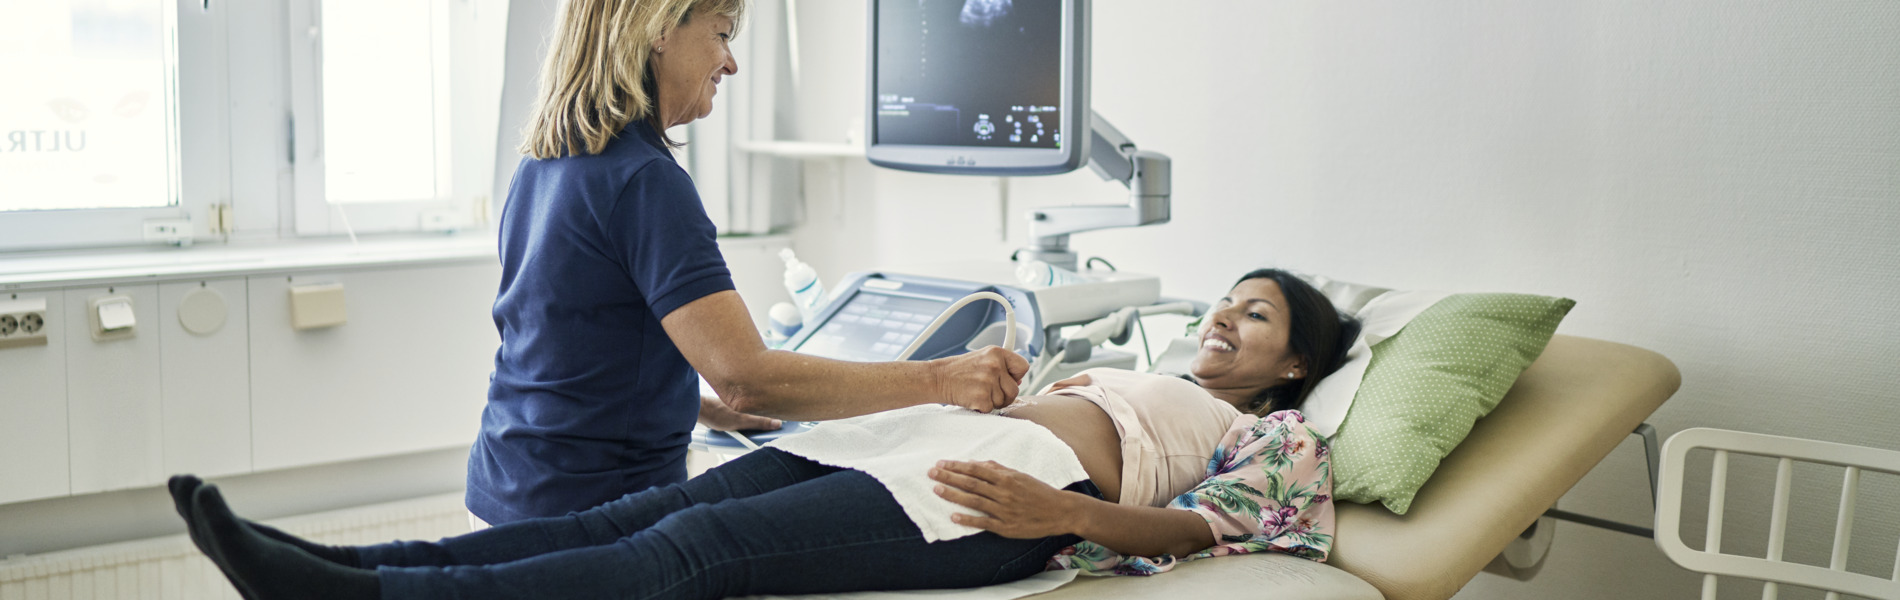 Sjukvårdklädd personal utför ultraljud på patient